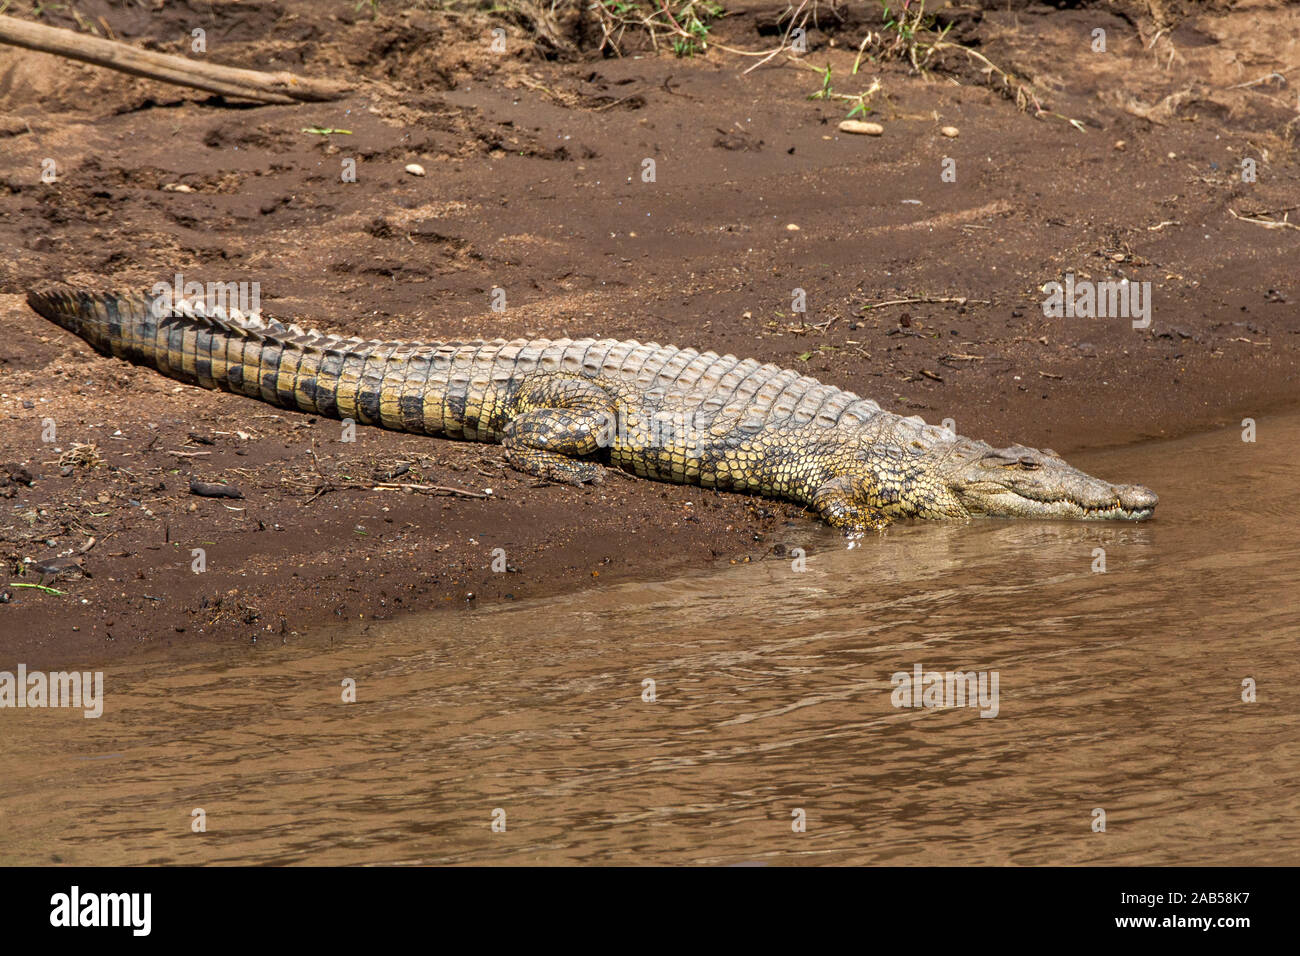 Leistenkrokodil (Crocodylus porosus) Foto de stock